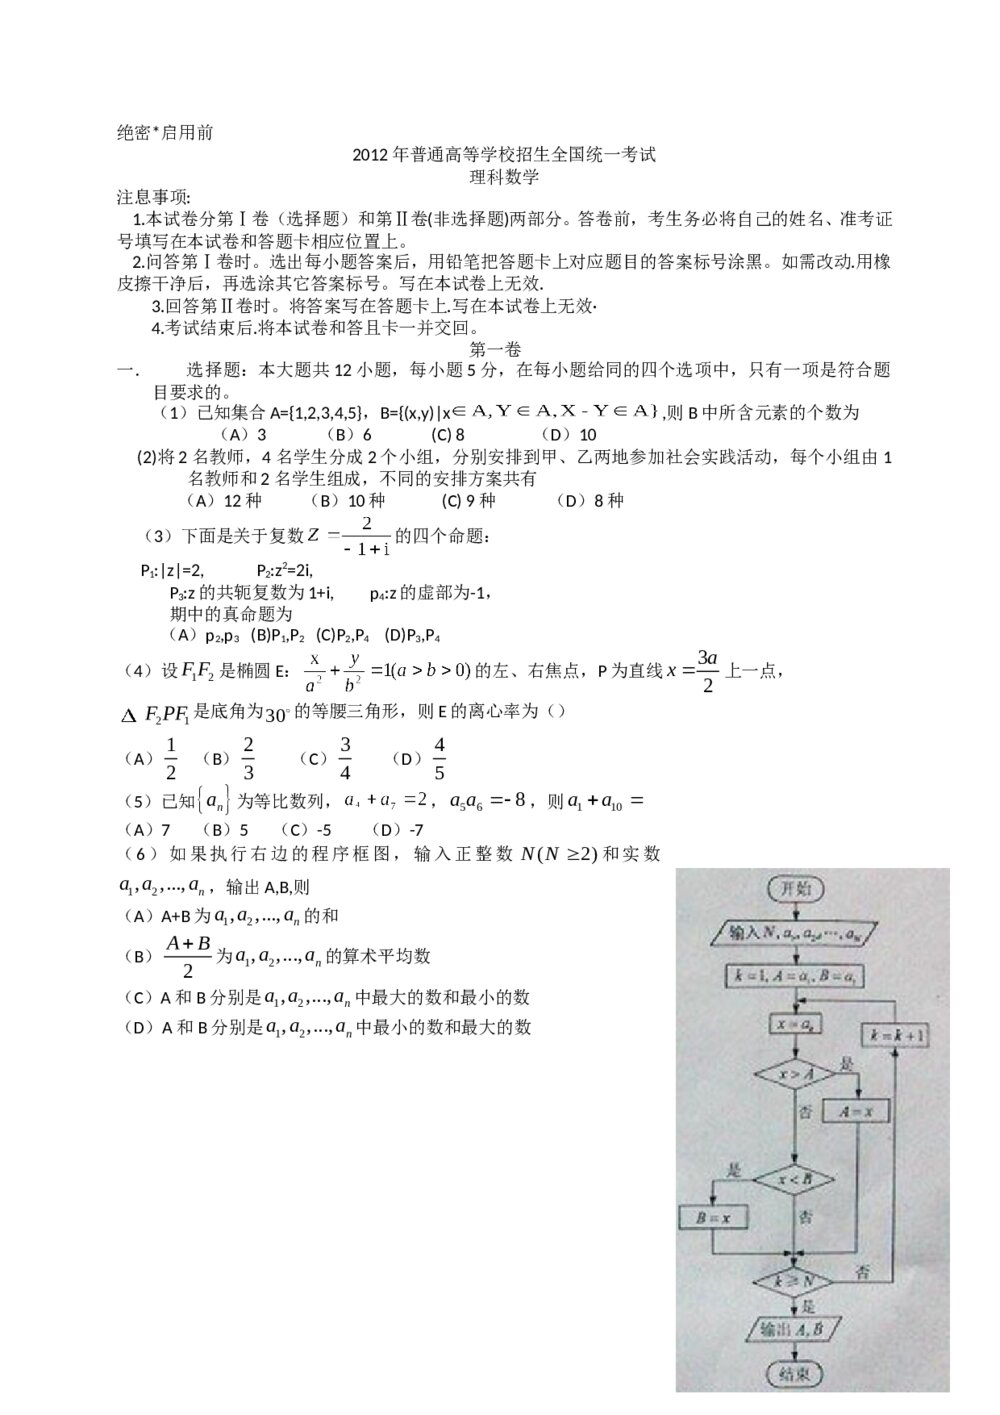 2012年海南省高考(理科)数学真题试卷+答案解析